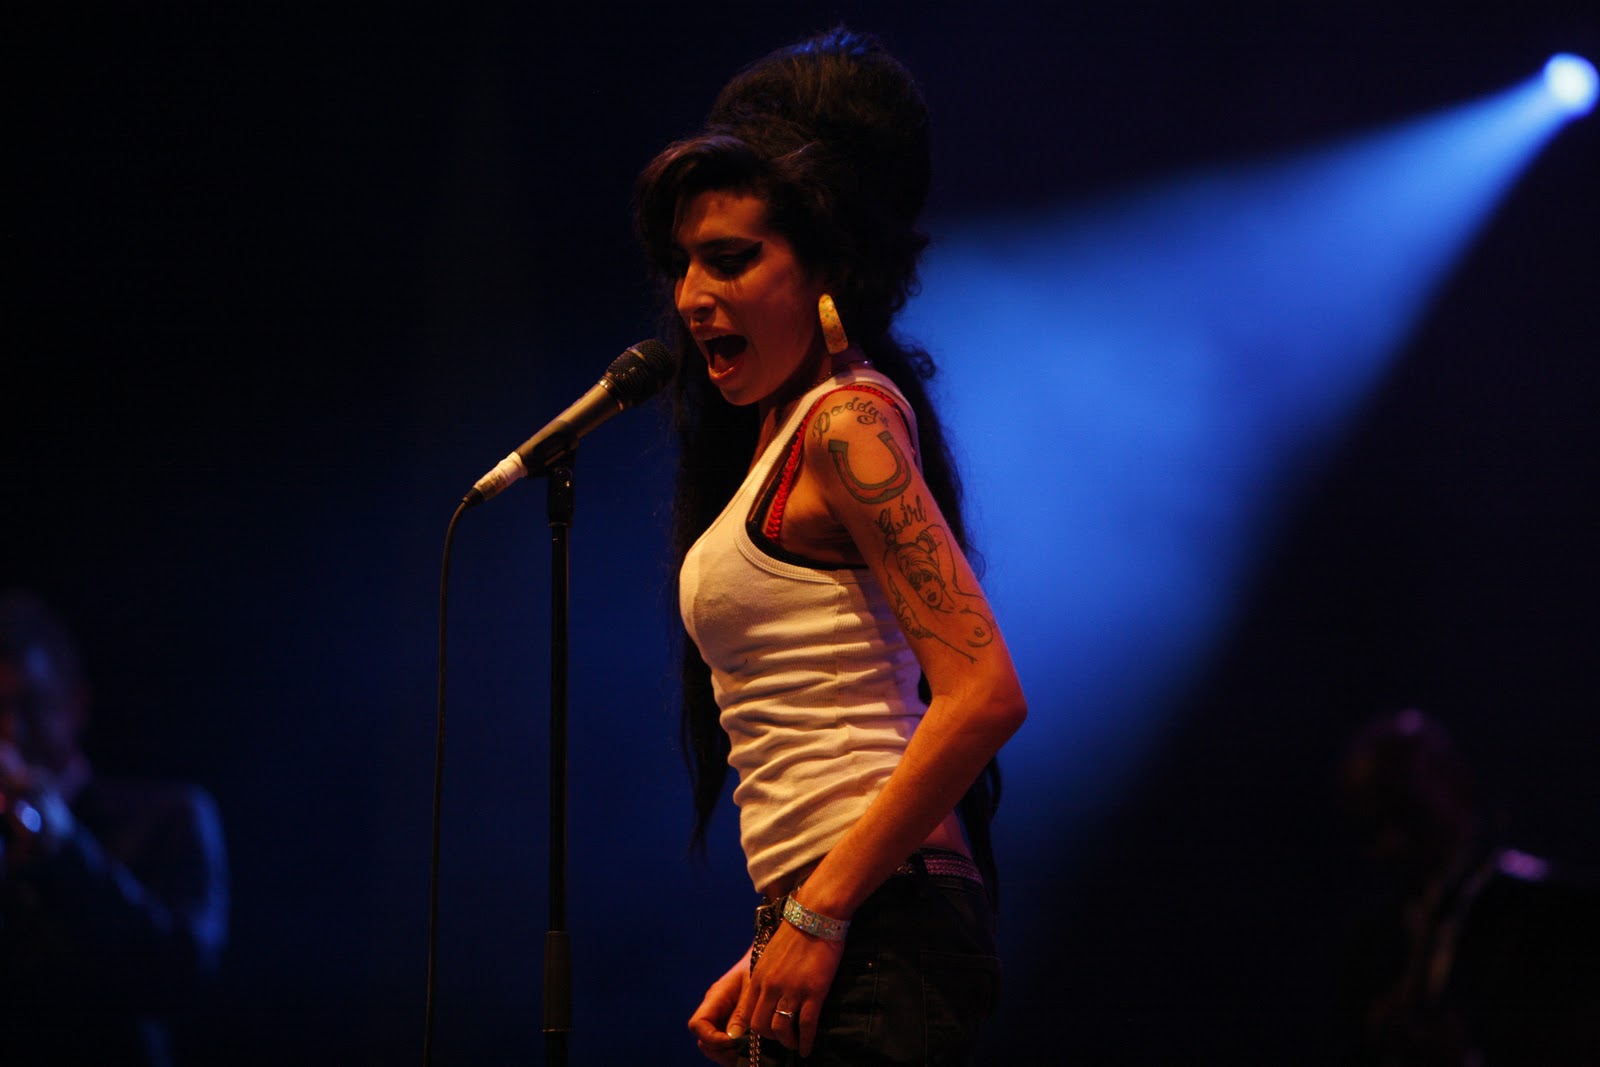 http://2.bp.blogspot.com/_VKxgfpVqWQU/TOq9XcXb7xI/AAAAAAAAAJw/6O-kLnGmpqI/s1600/Amy_Winehouse_f4962007.jpg